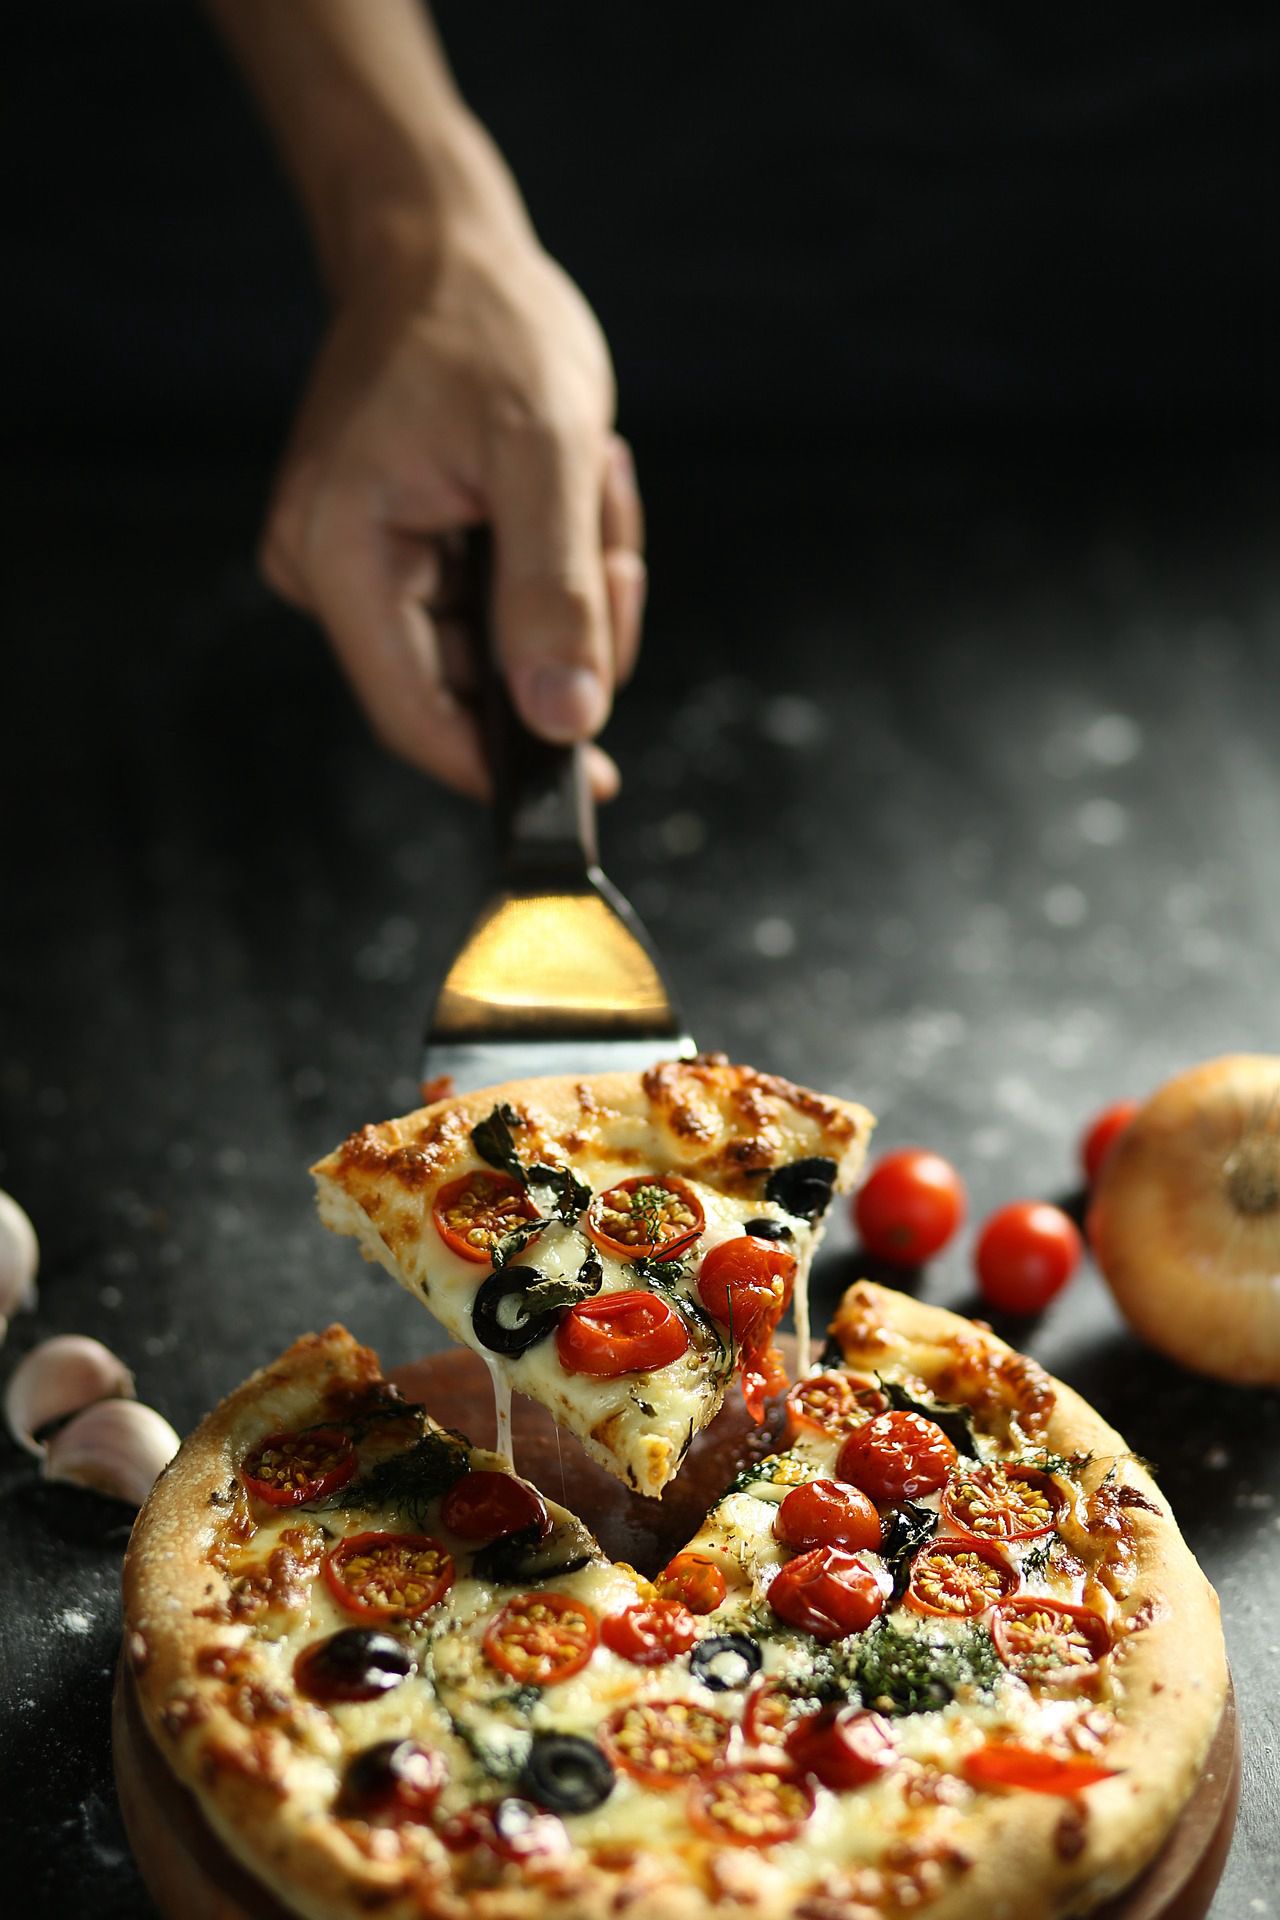 自制可口的披萨图片 在家就能做的简单美味的披萨